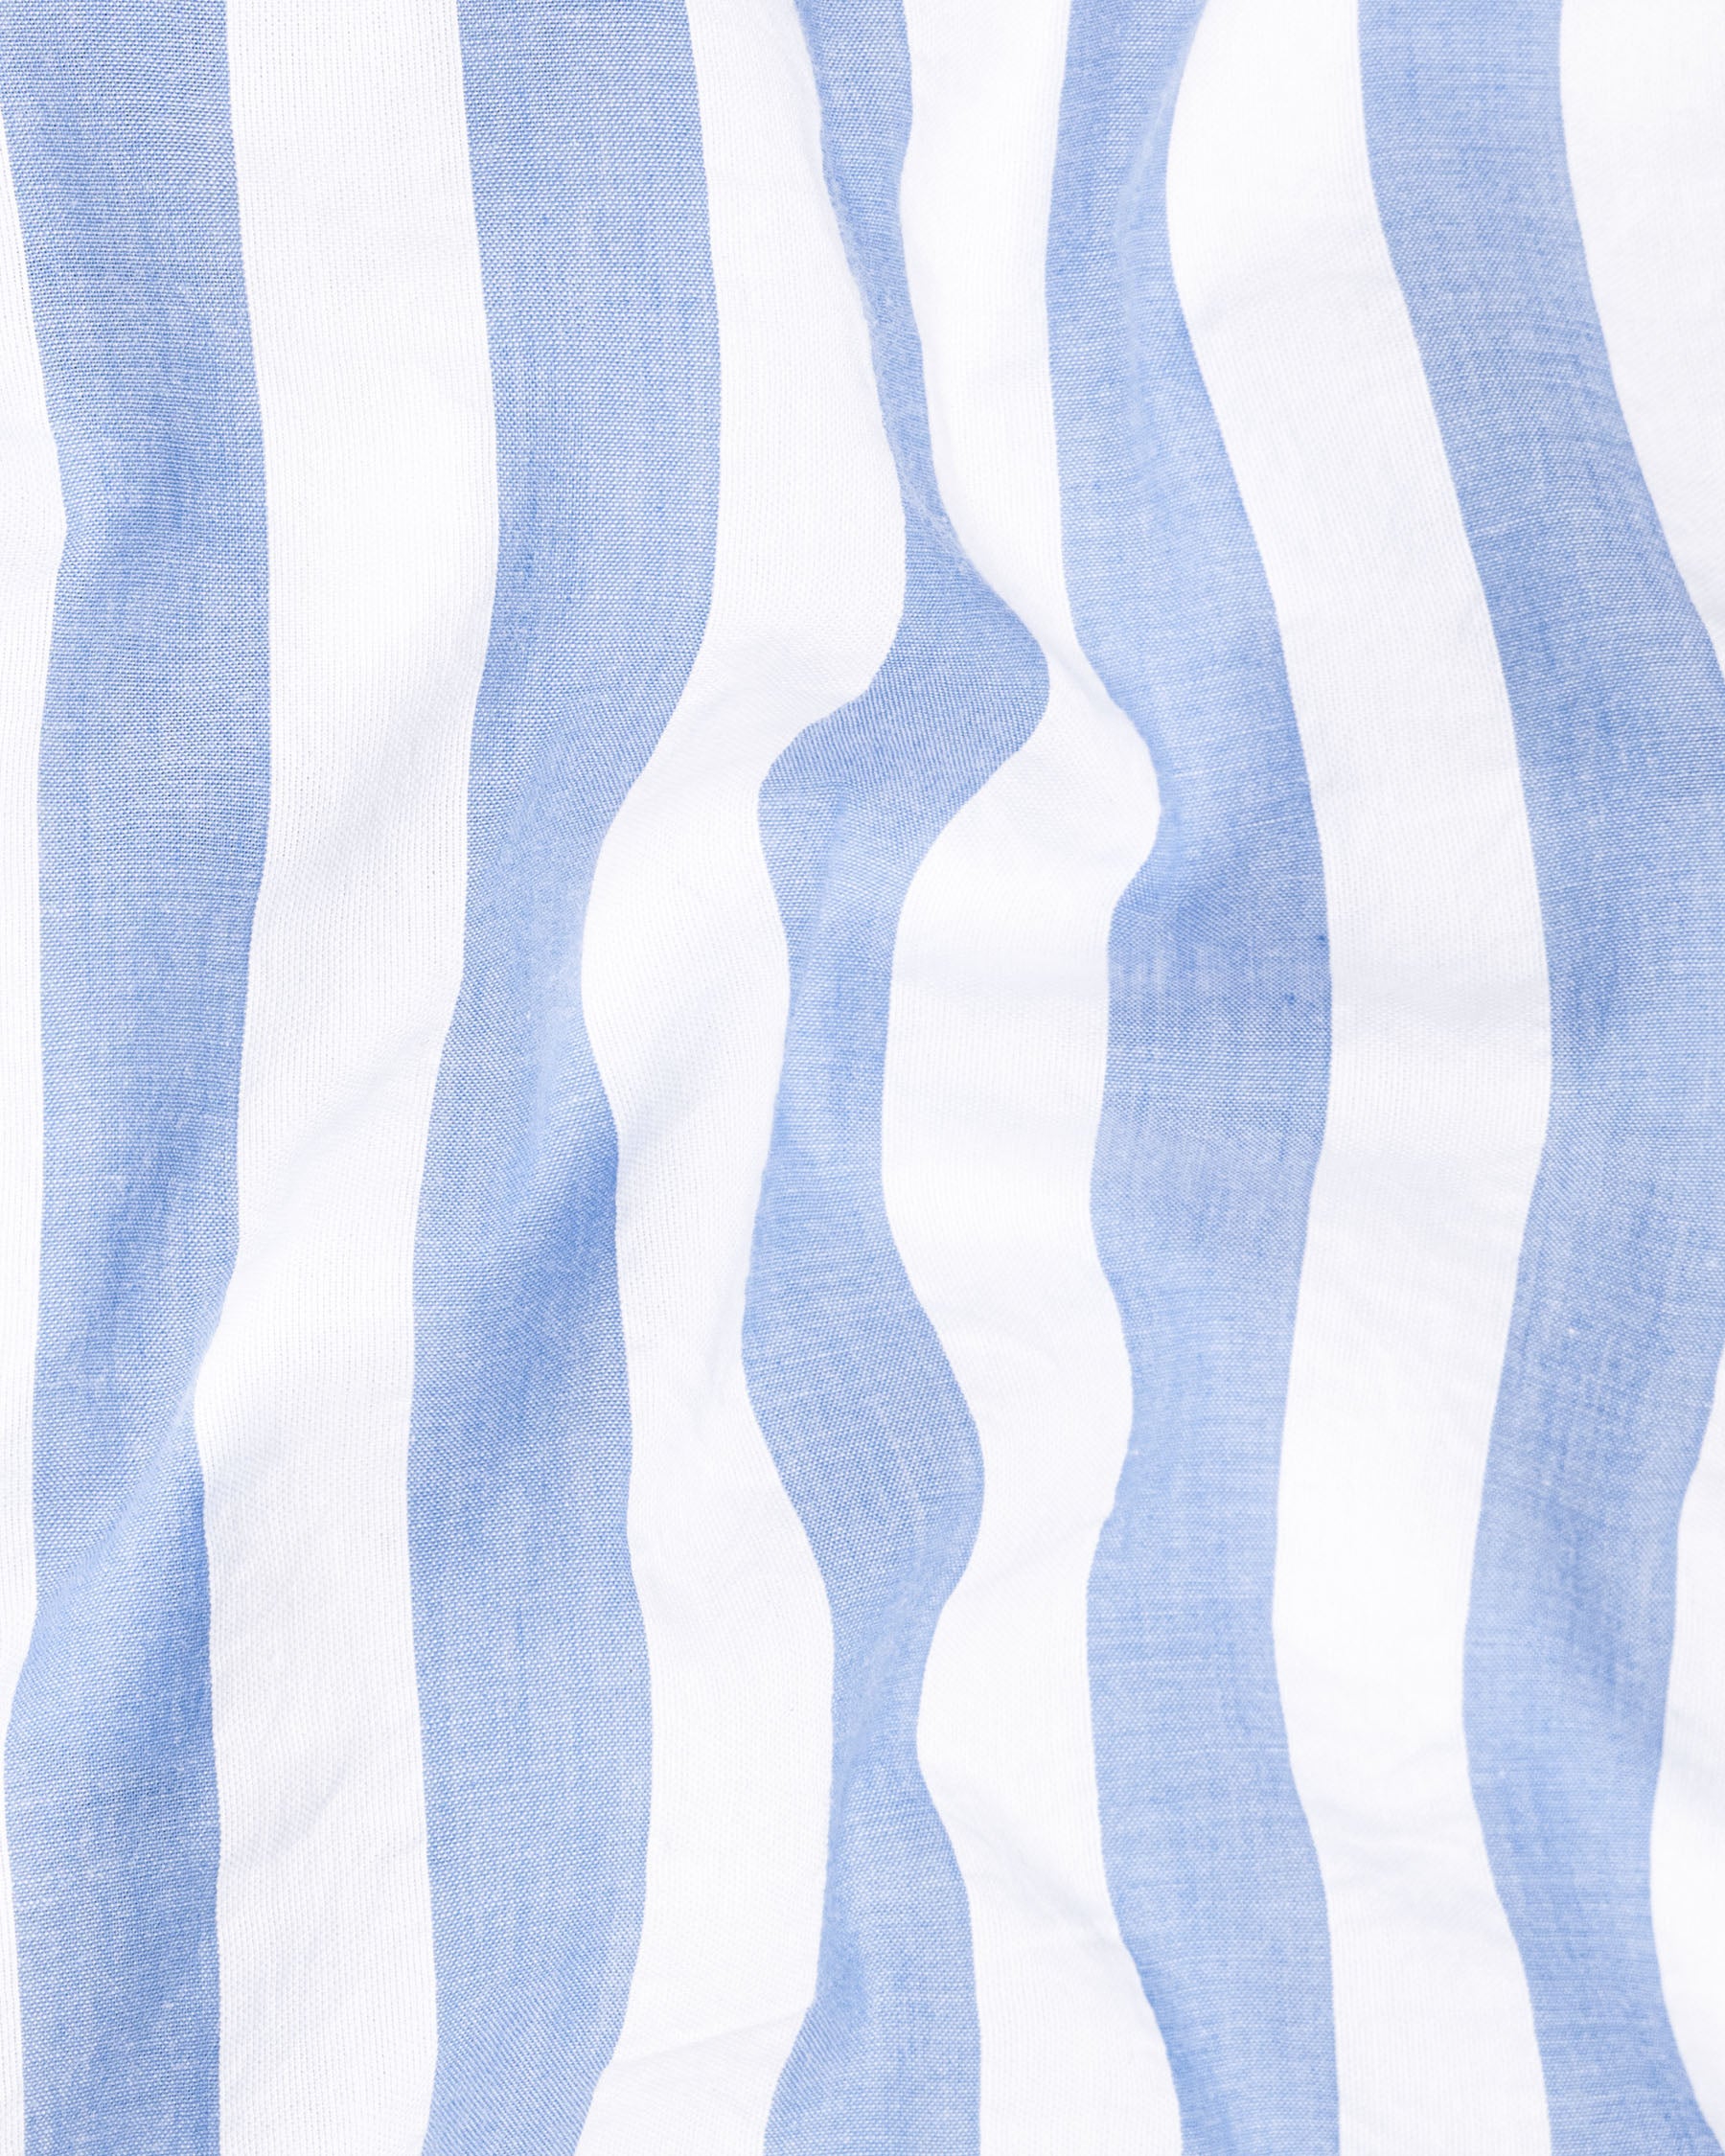 Bright White and Casper Blue Striped Premium Cotton Shirt 7059-M-38, 7059-M-H-38, 7059-M-39, 7059-M-H-39, 7059-M-40, 7059-M-H-40, 7059-M-42, 7059-M-H-42, 7059-M-44, 7059-M-H-44, 7059-M-46, 7059-M-H-46, 7059-M-48, 7059-M-H-48, 7059-M-50, 7059-M-H-50, 7059-M-52, 7059-M-H-52